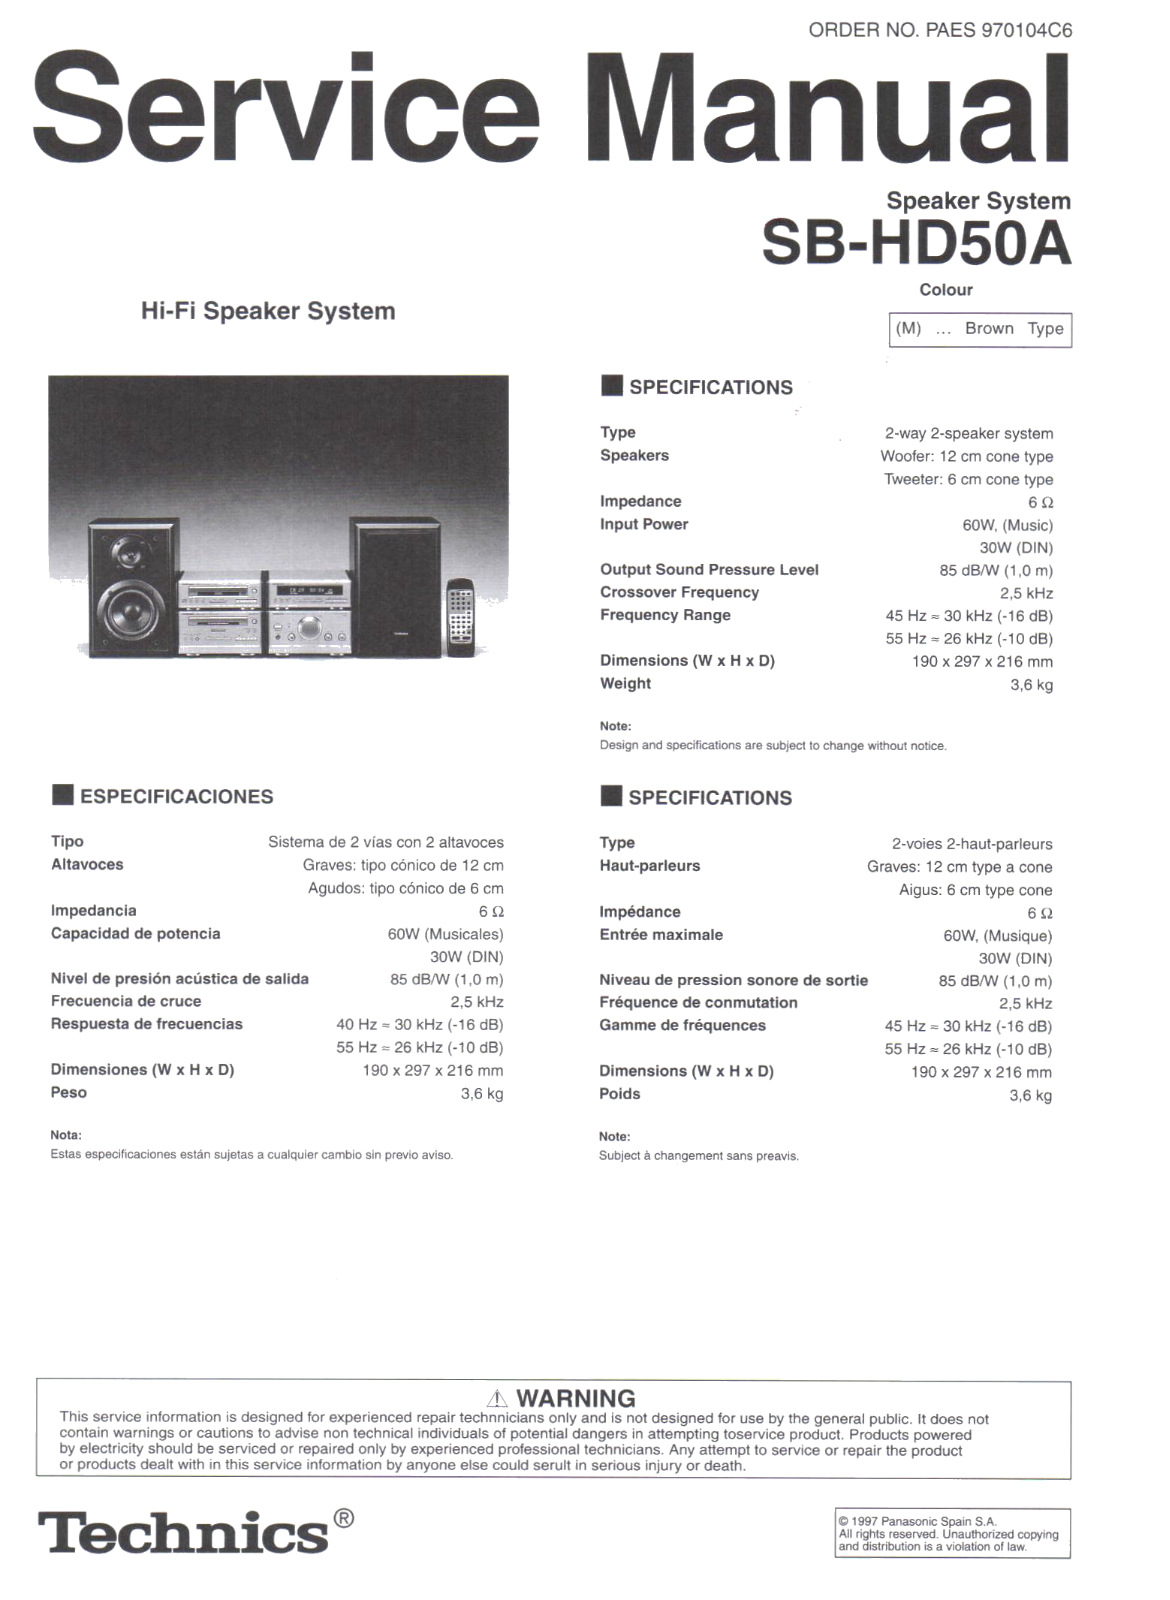 Technics SB-HD-50-A Service Manual